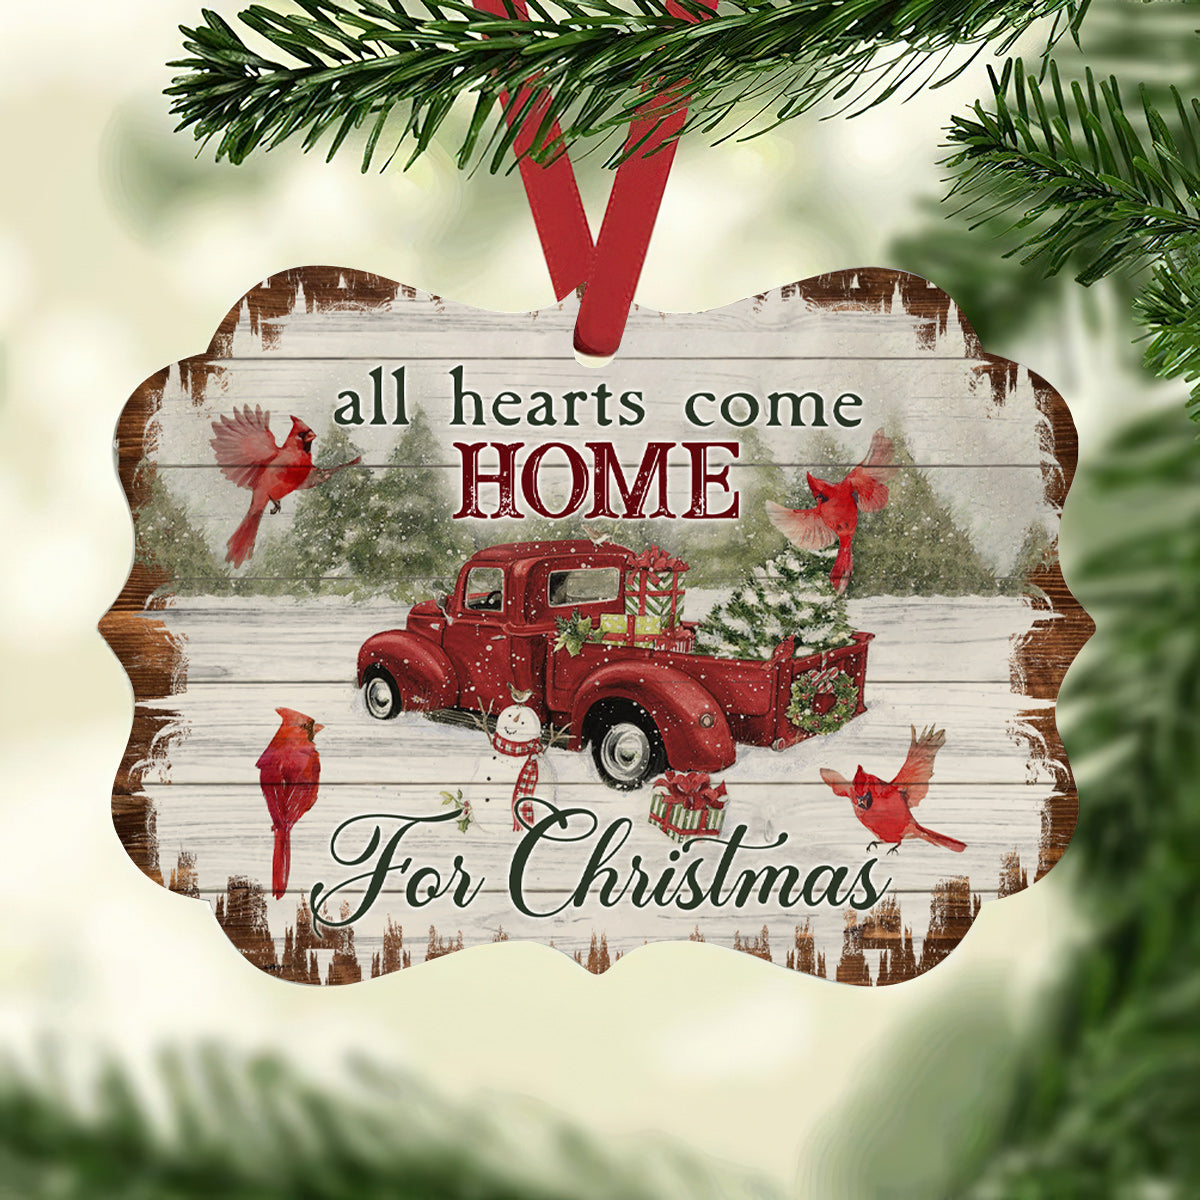 Cardinal Birds All Hearts Come Home For Christmas - Horizontal Ornament - Owls Matrix LTD